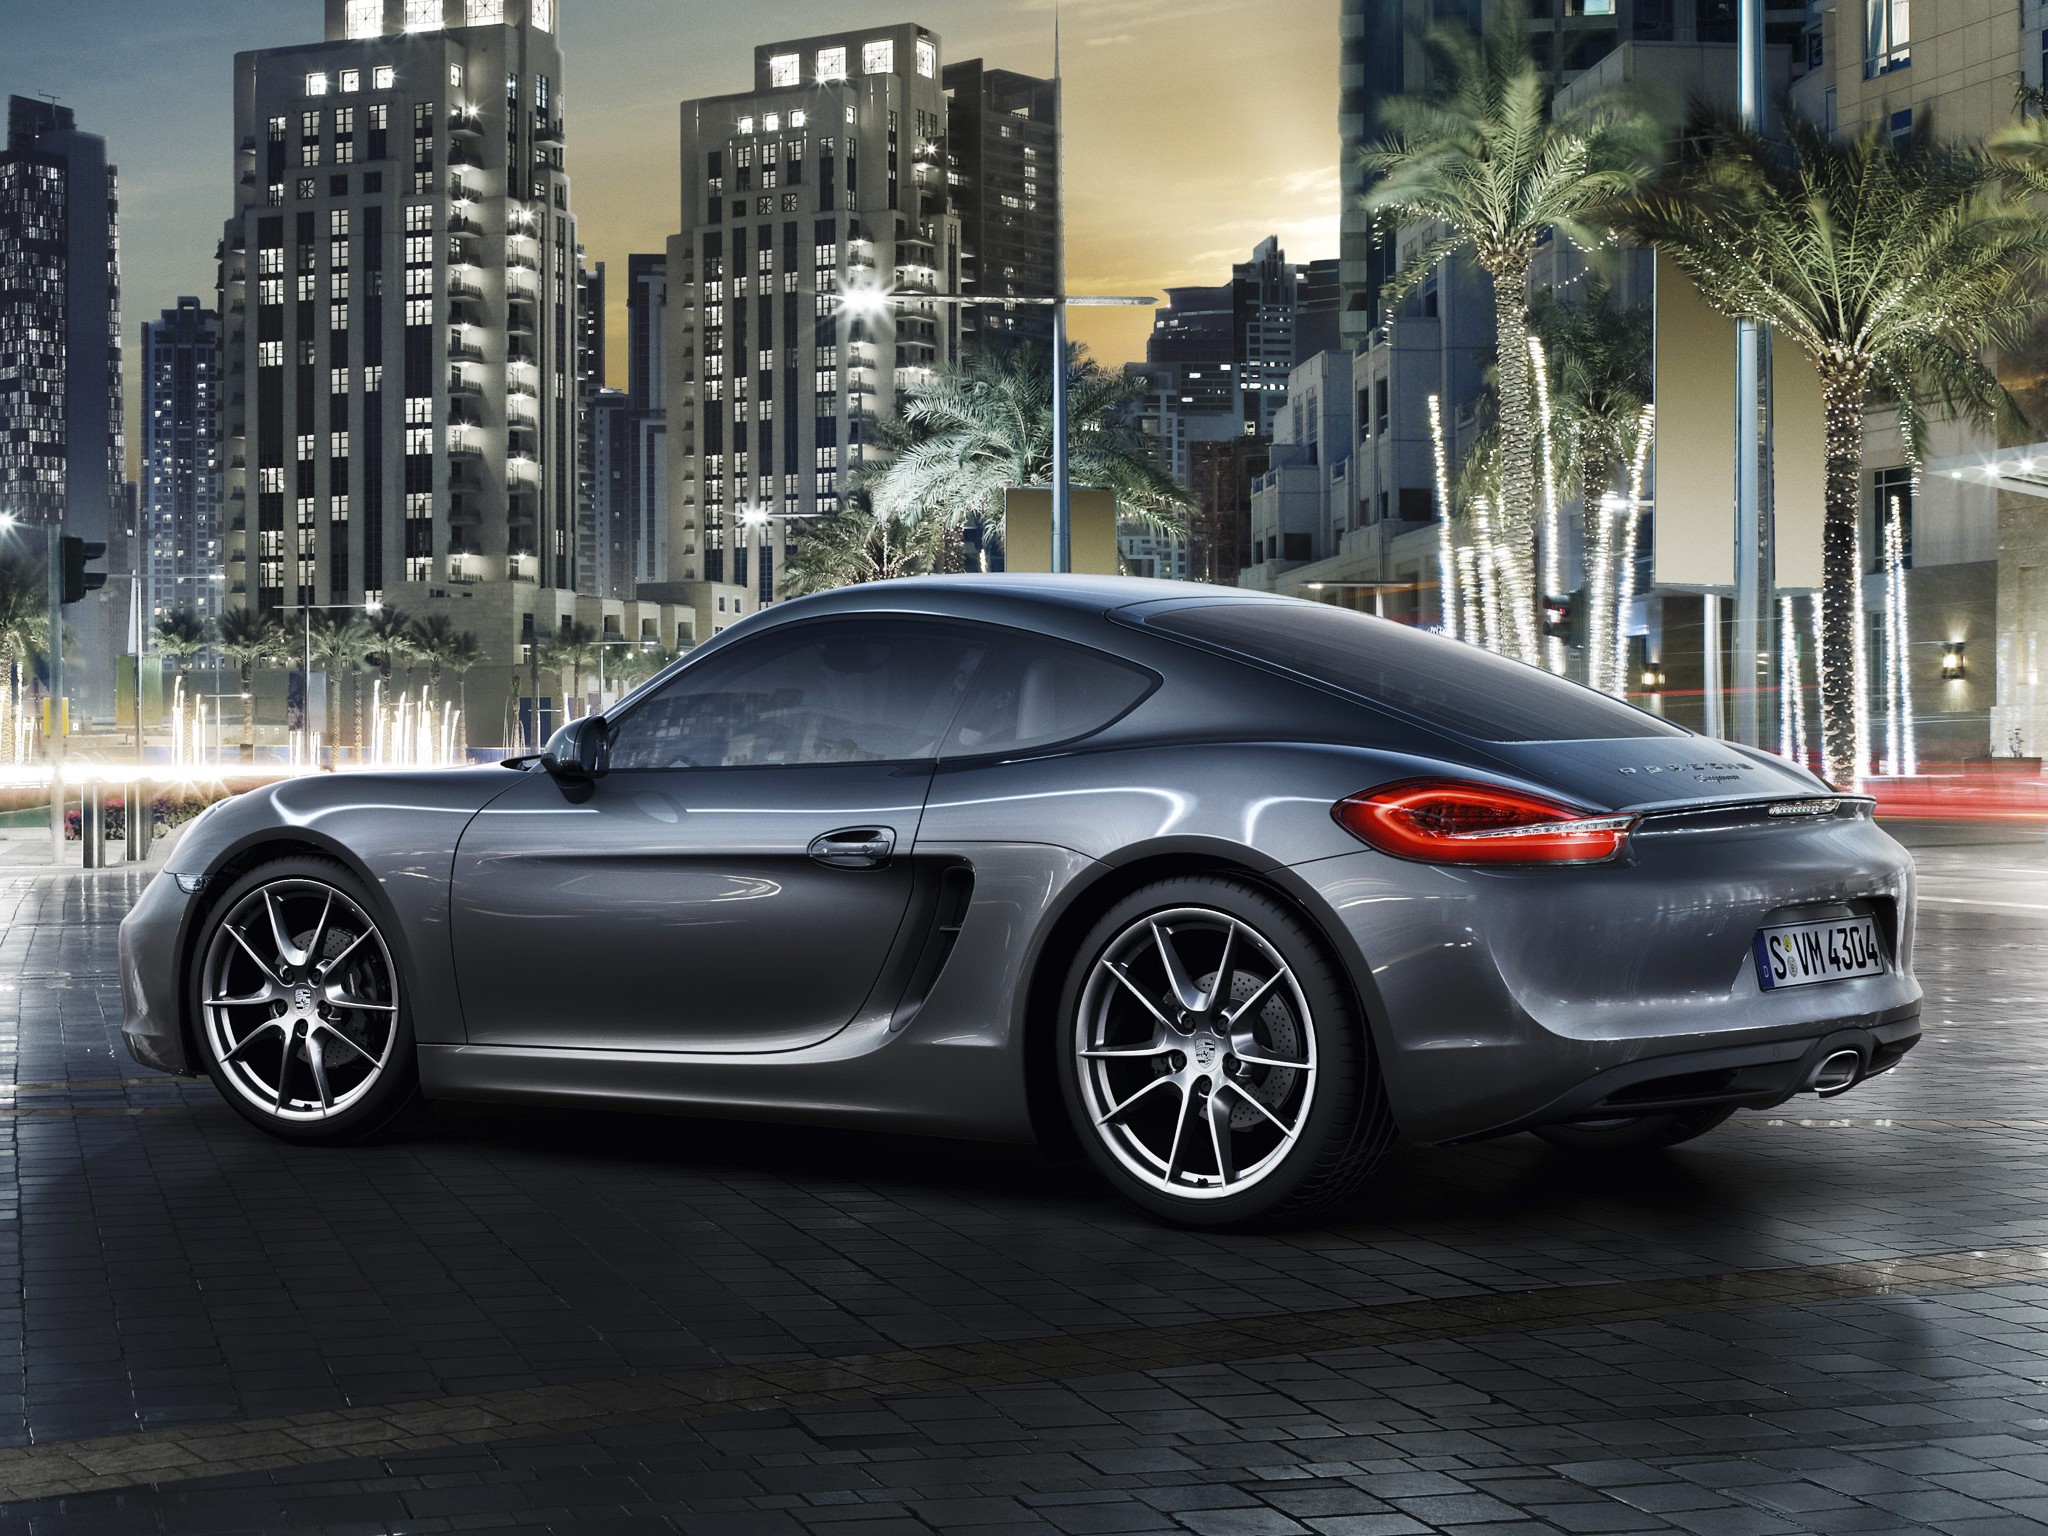 2013, Porsche, Cayman, Sportcar, Silver Wallpaper